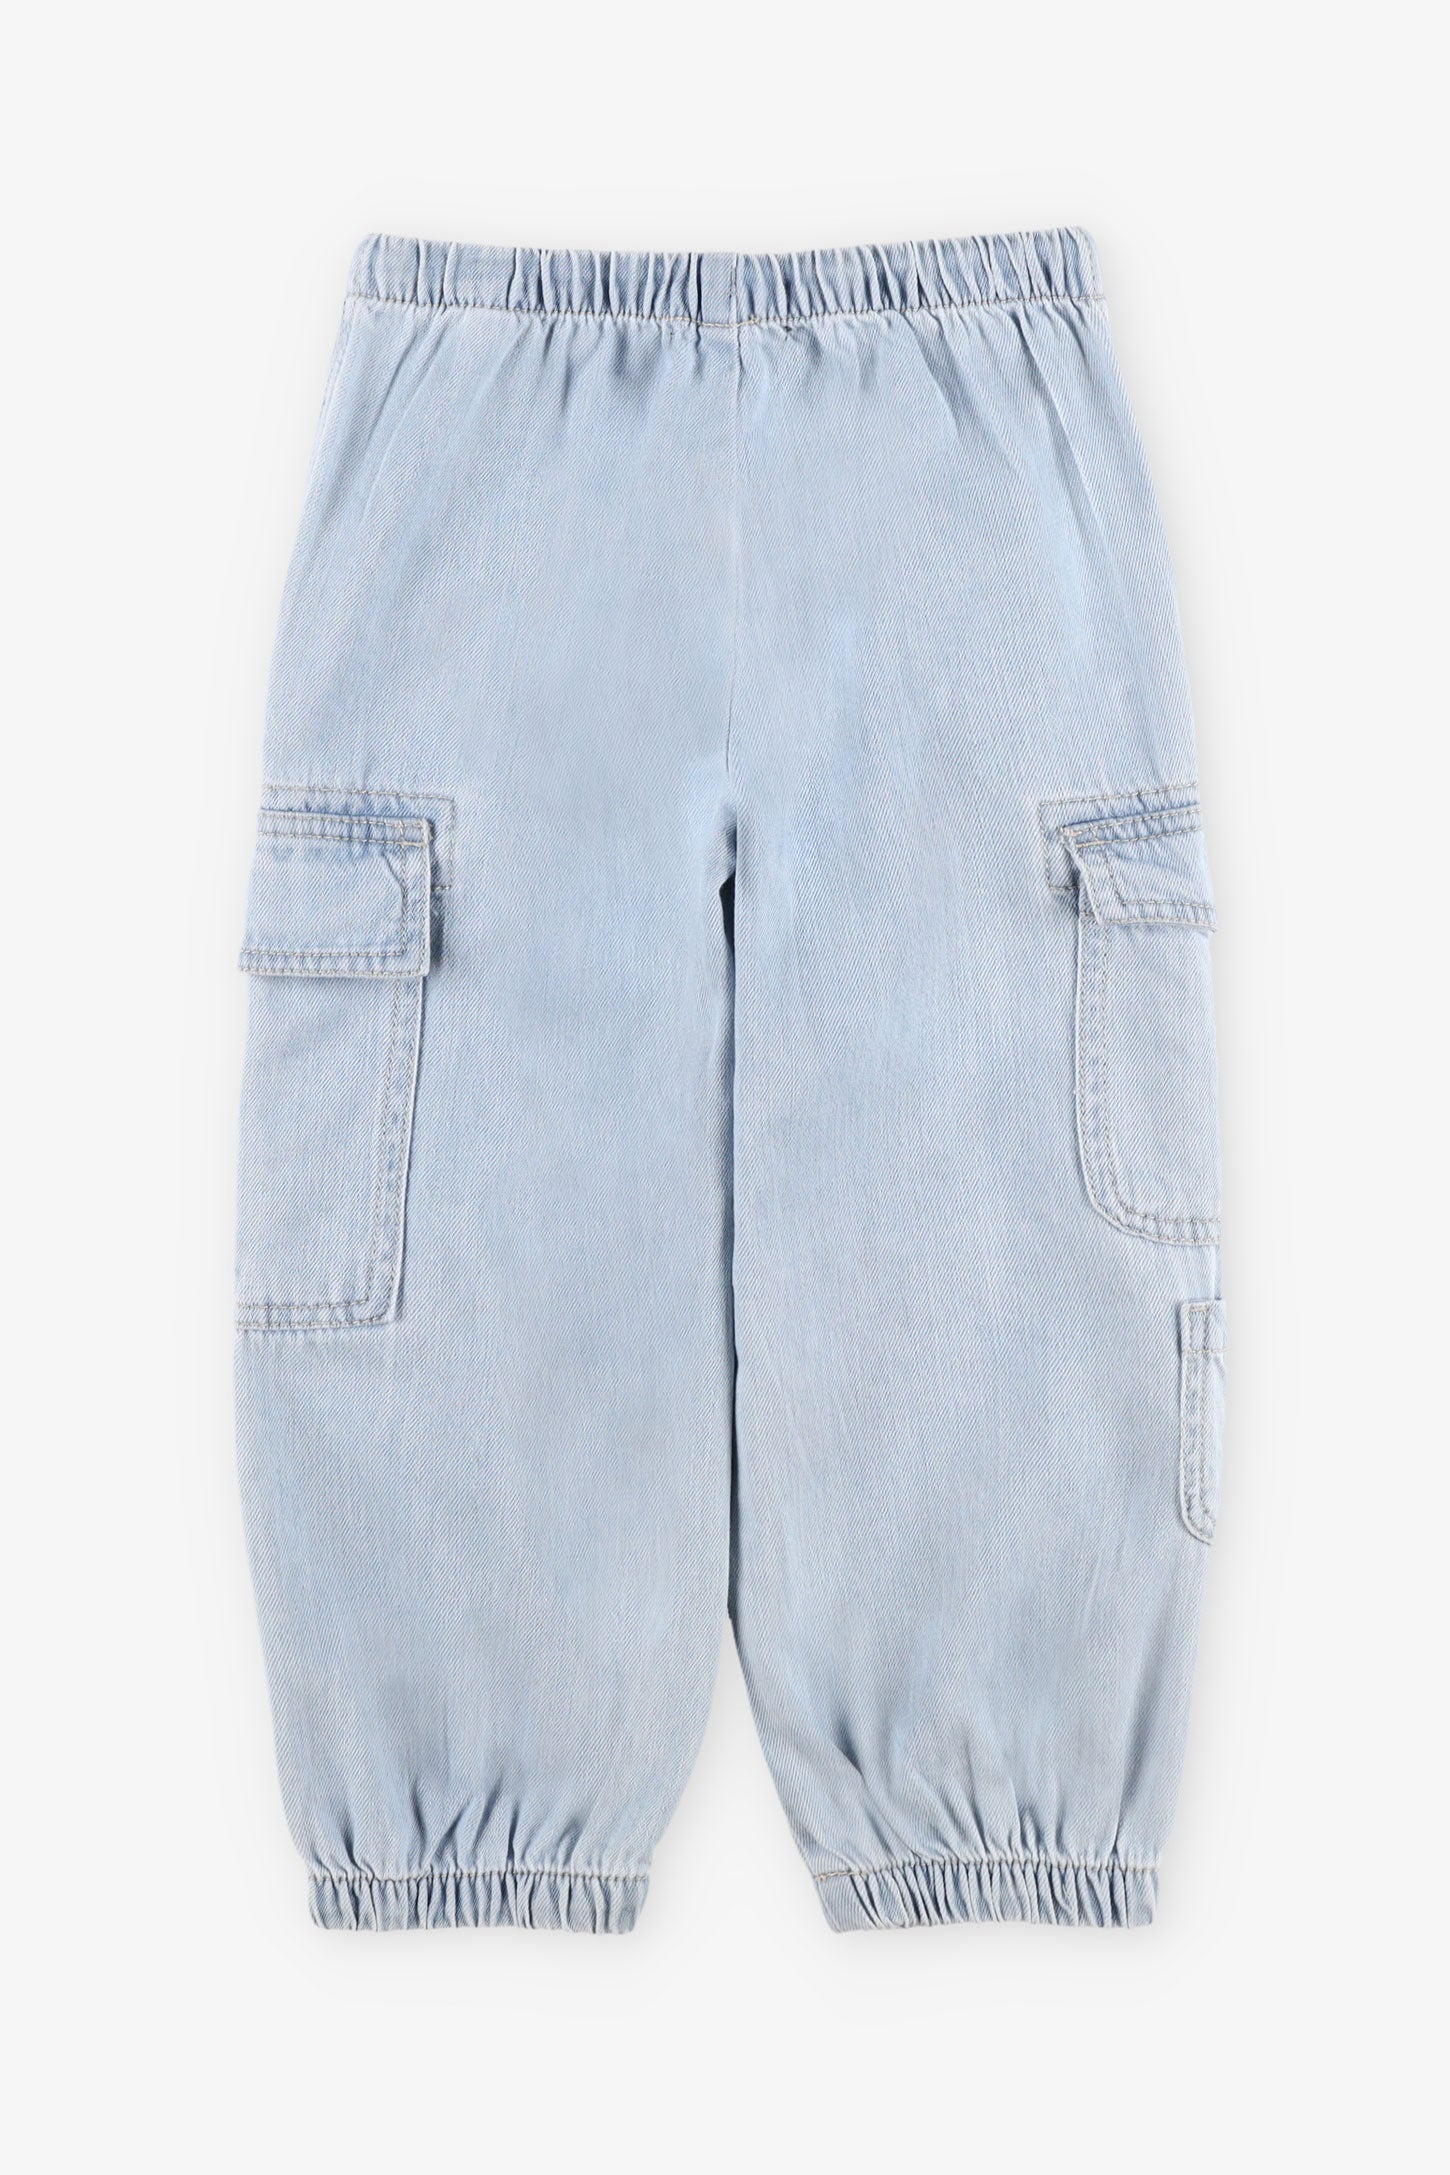 Jeans parachute coton - Enfant fille && BLEU PALE